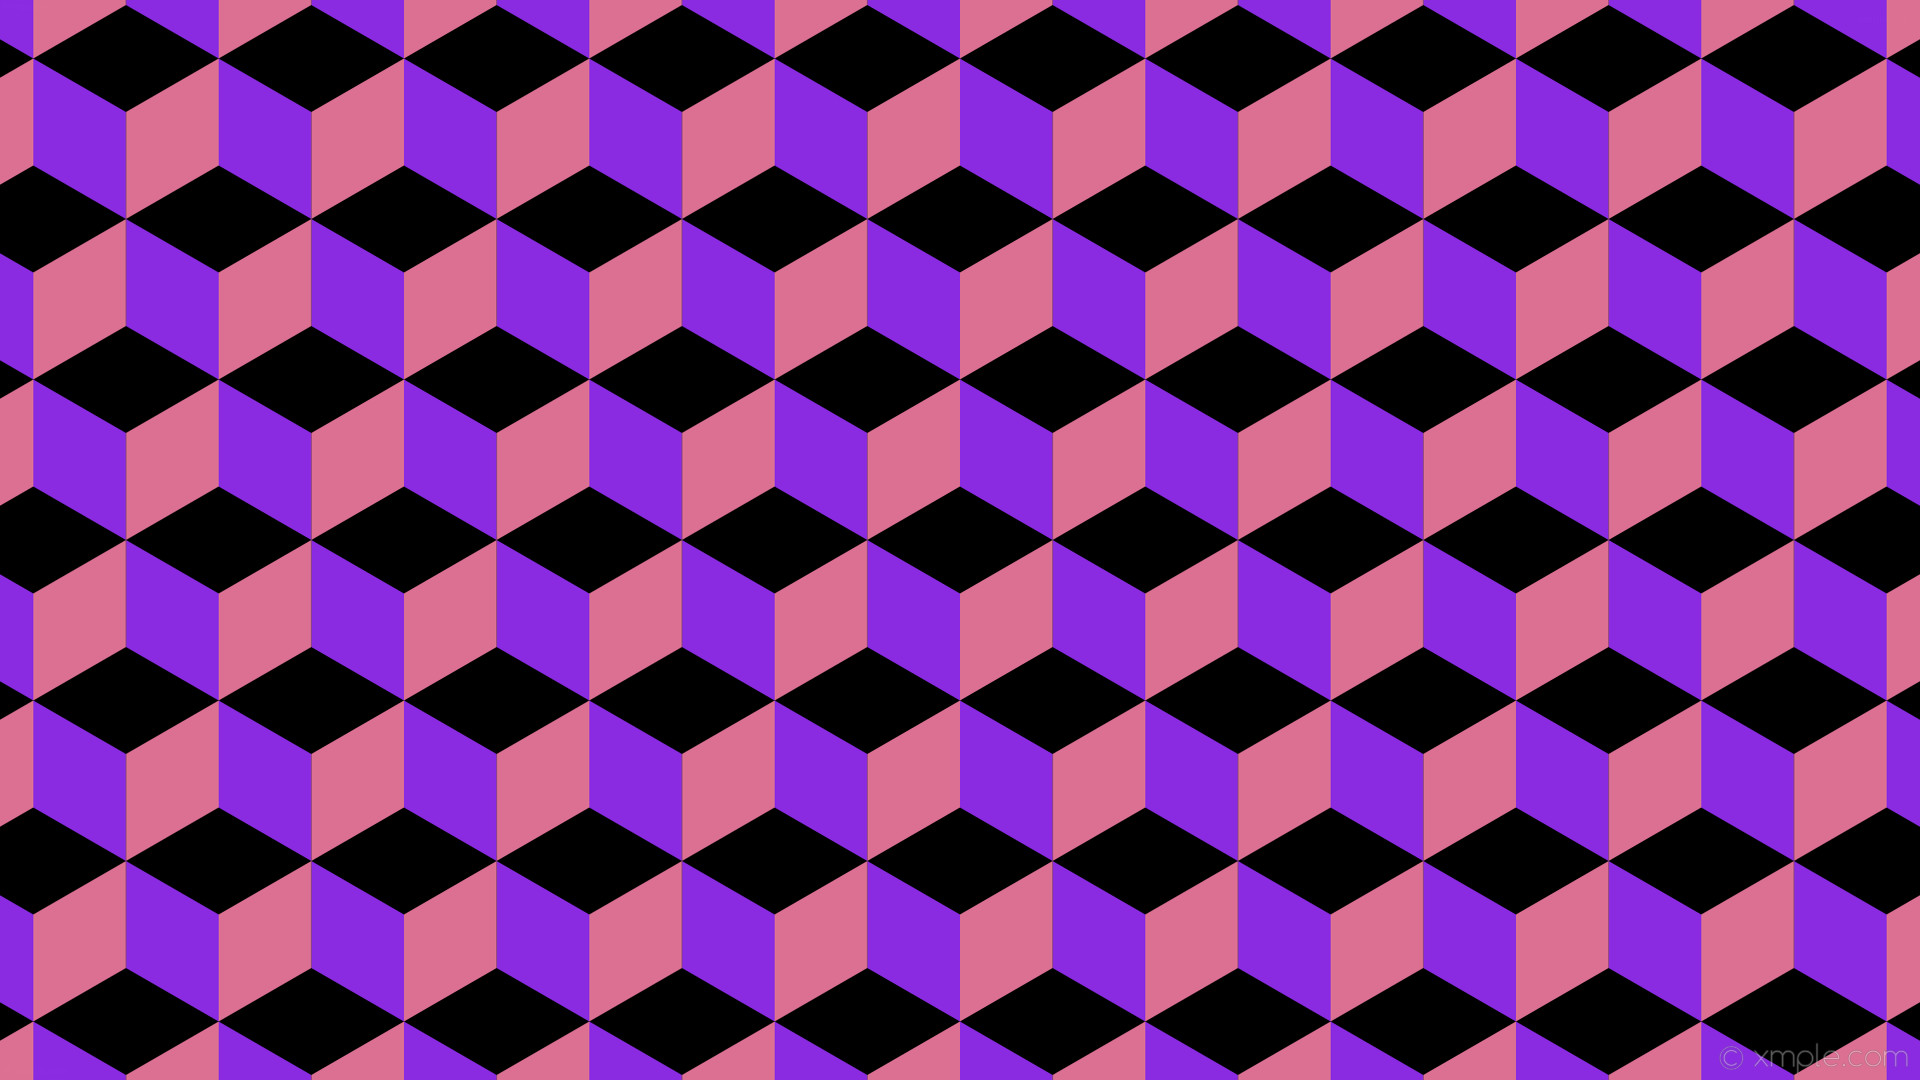 1920x1080 wallpaper pink purple 3d cubes black blue violet pale violet red #000000  #8a2be2 #